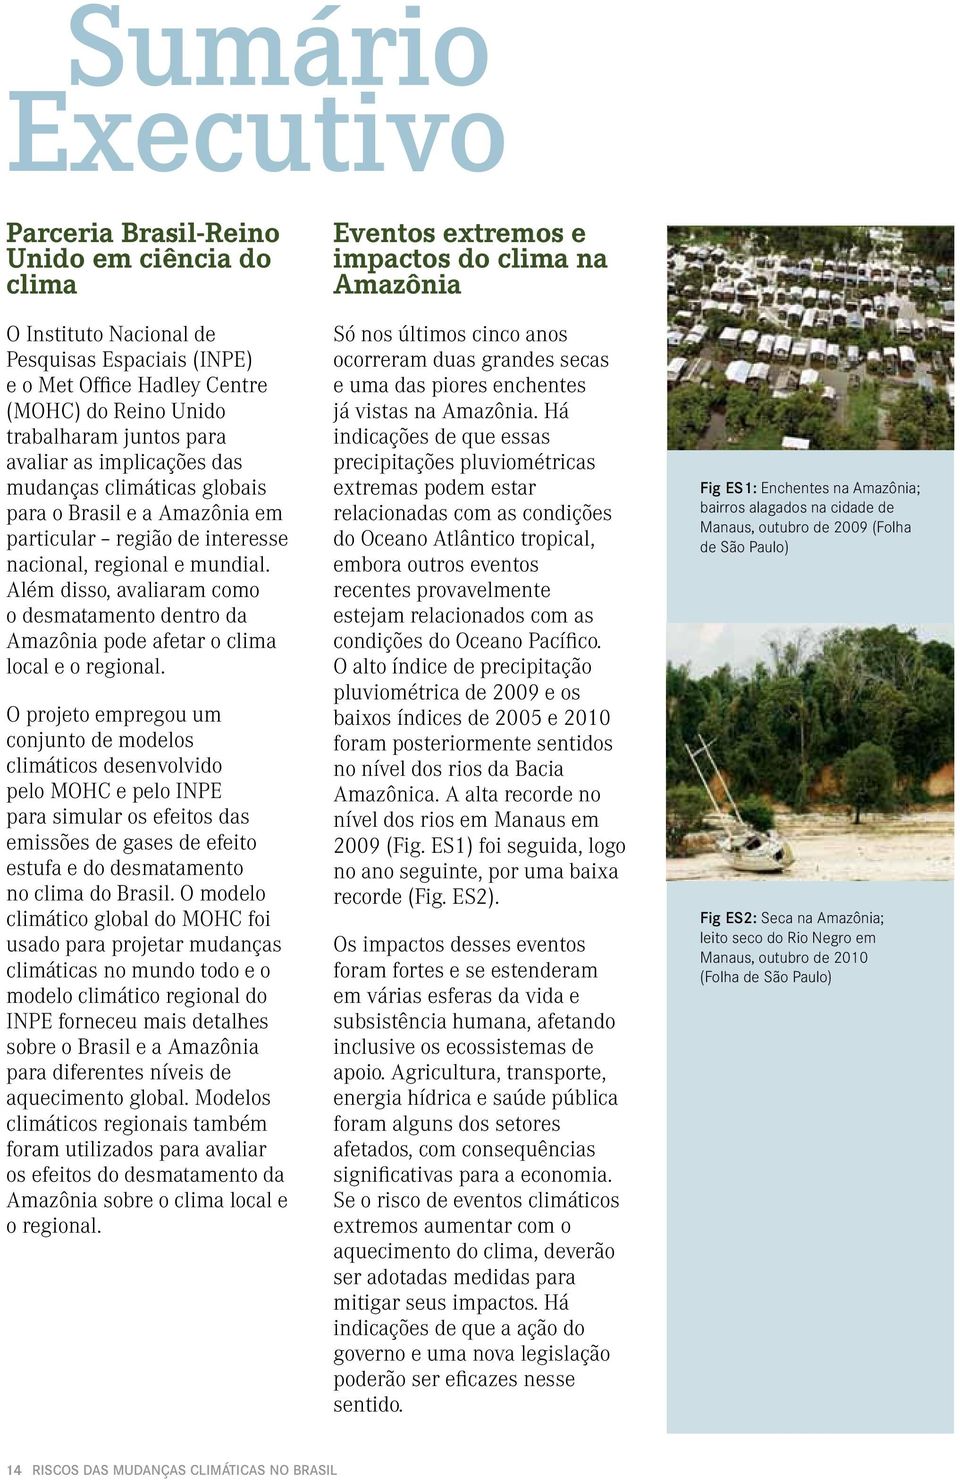 Além disso, avaliaram como o desmatamento dentro da Amazônia pode afetar o clima local e o regional.